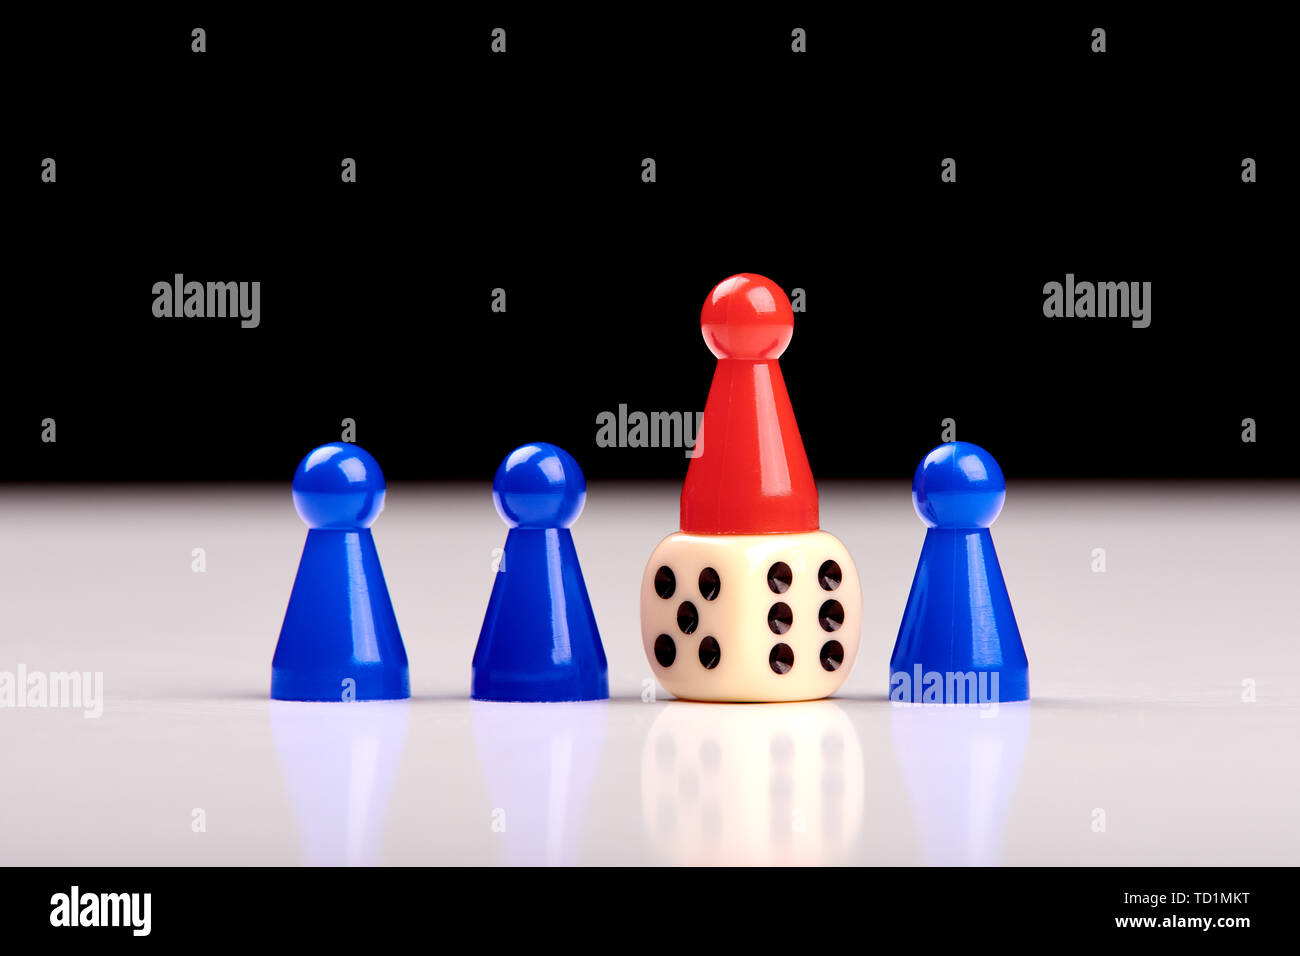 Azul de tres piezas de juego y entre ellos una pieza roja se alza sobre un dados como ganador o como líder. Fondo blanco y negro borrosa Foto de stock